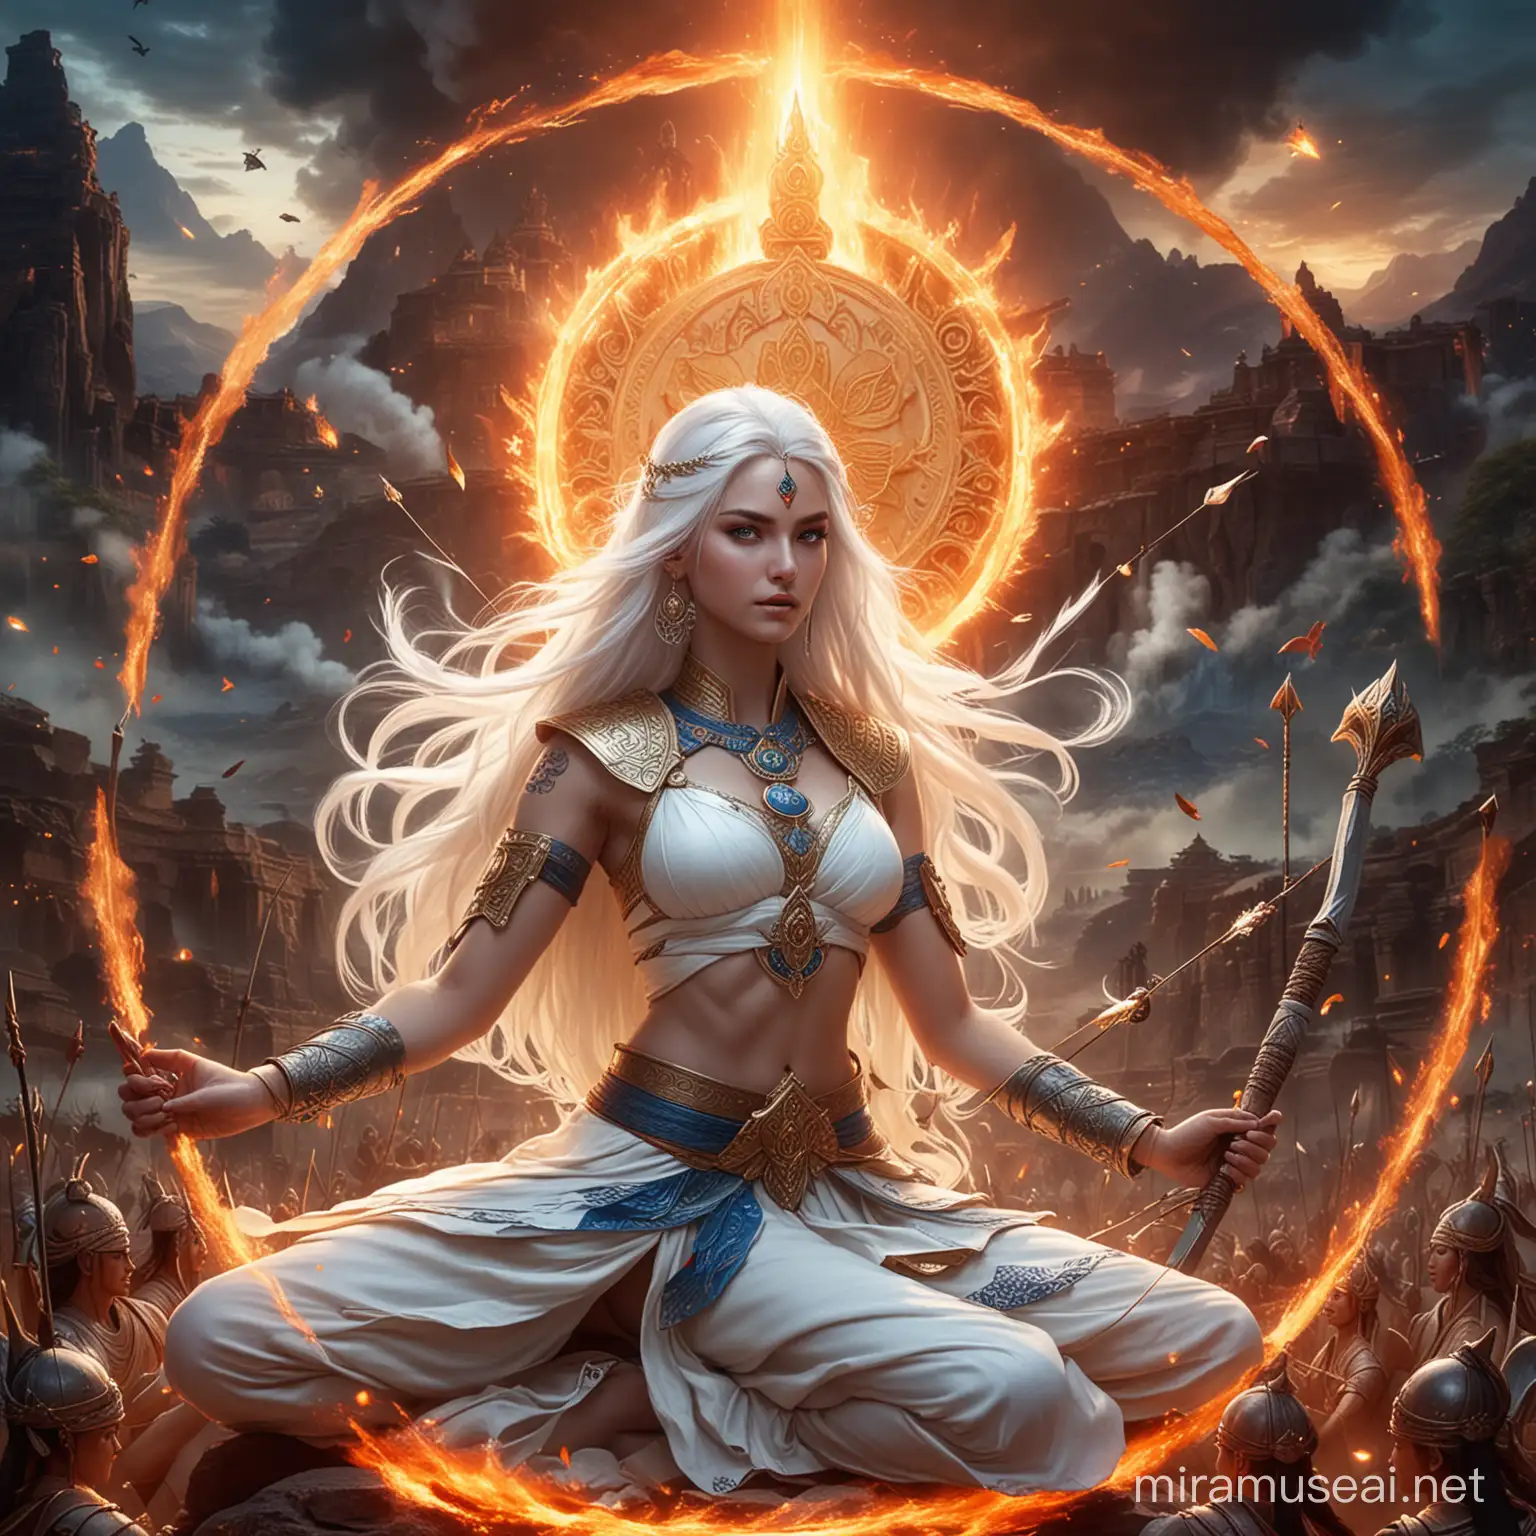 Hindu Empress Goddess in Combat Amidst Fire and Mystical Symbols